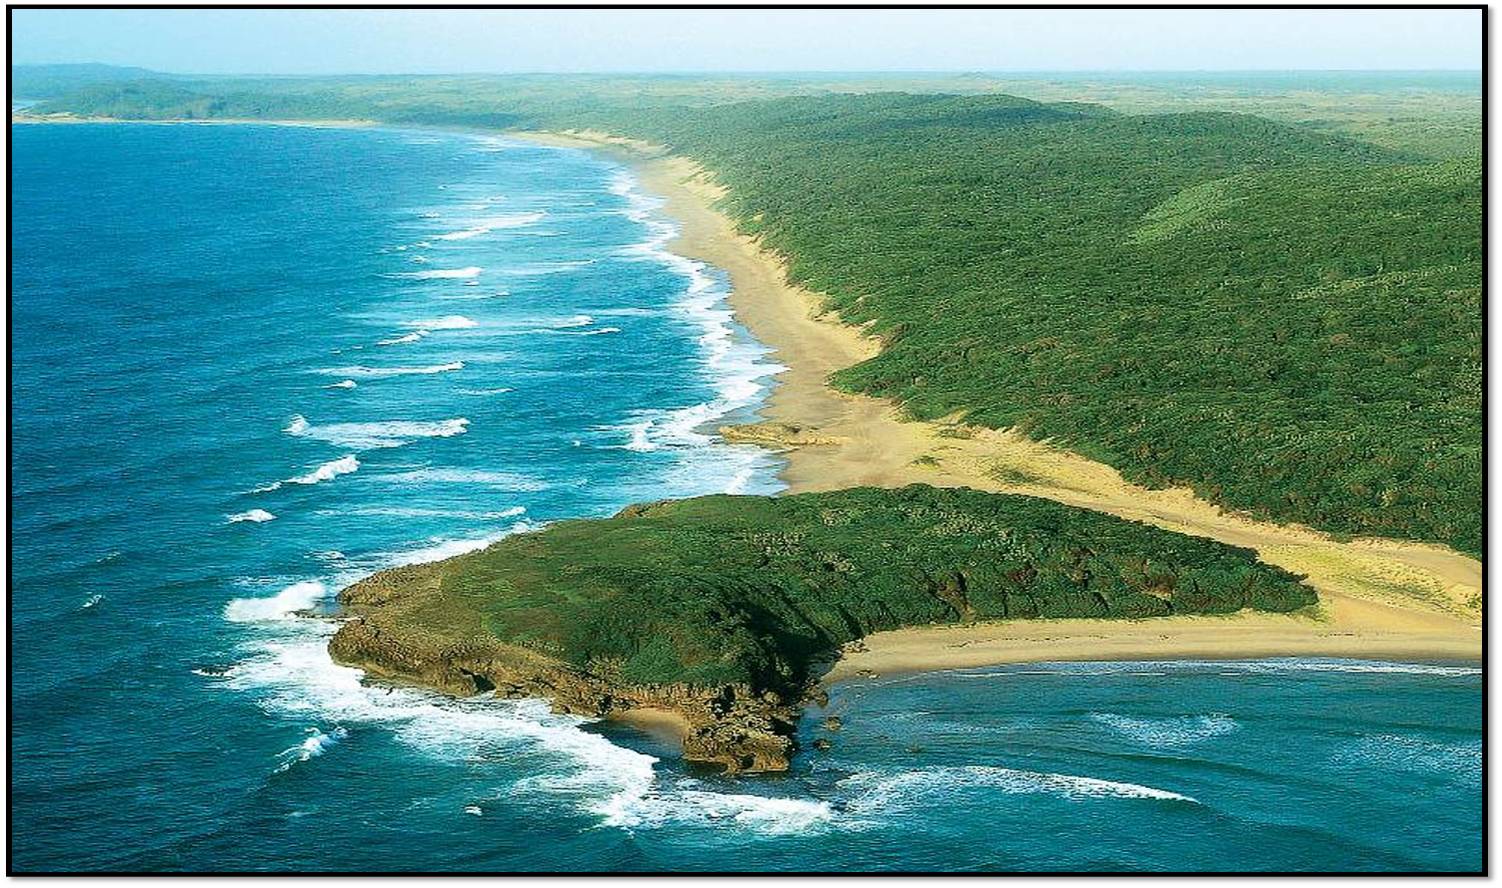 Прибрежная часть океана. Прибрежная равнина Бразилии. Бразилия Атлантический океан. Северное побережье Африки. ЮАР индийский океан.